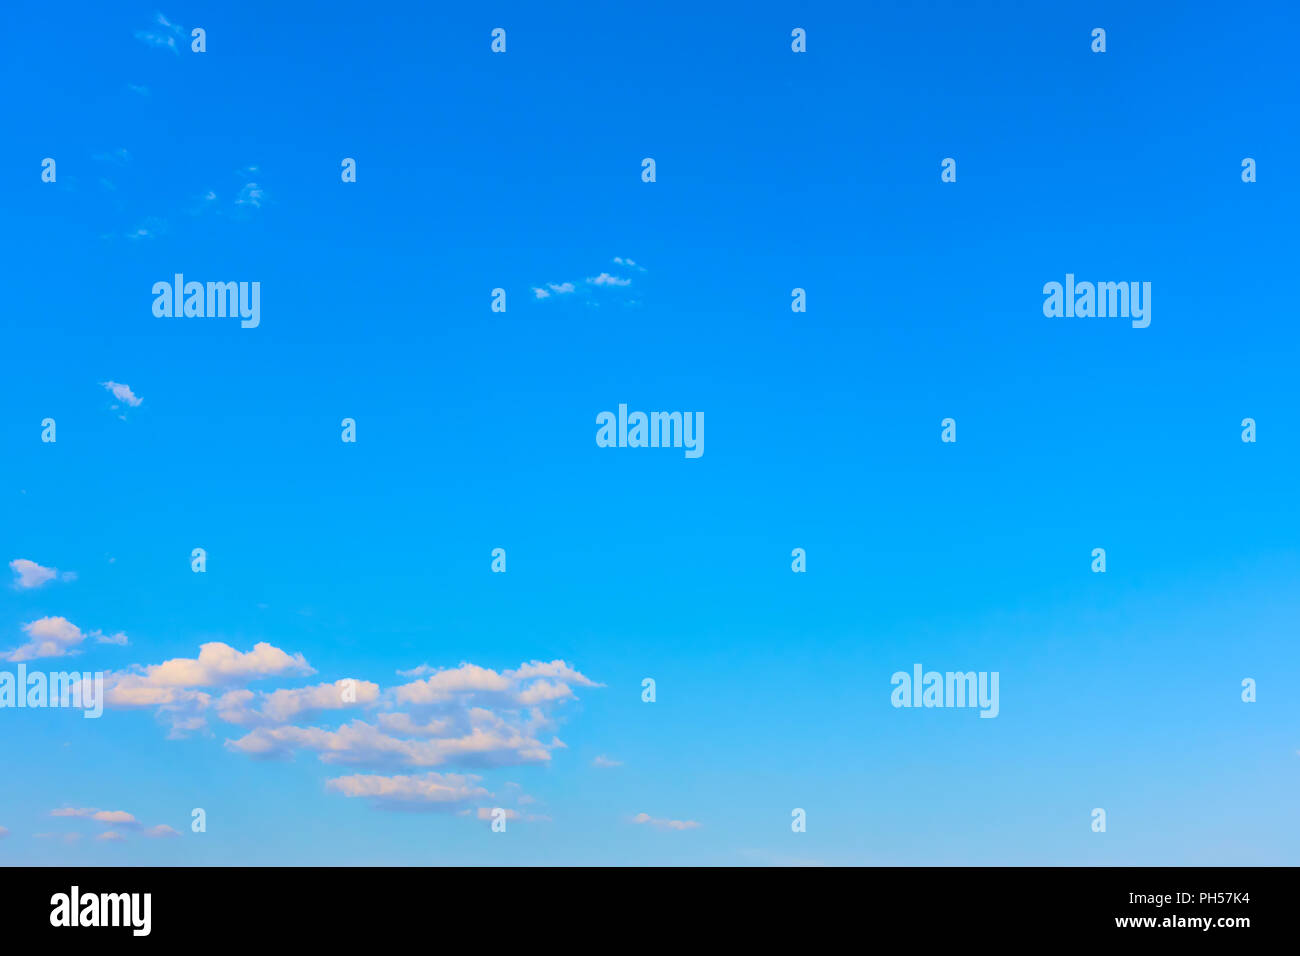 Fast klaren blauen Himmel mit Wolken - Hintergrund mit großen Copyspace Stockfoto